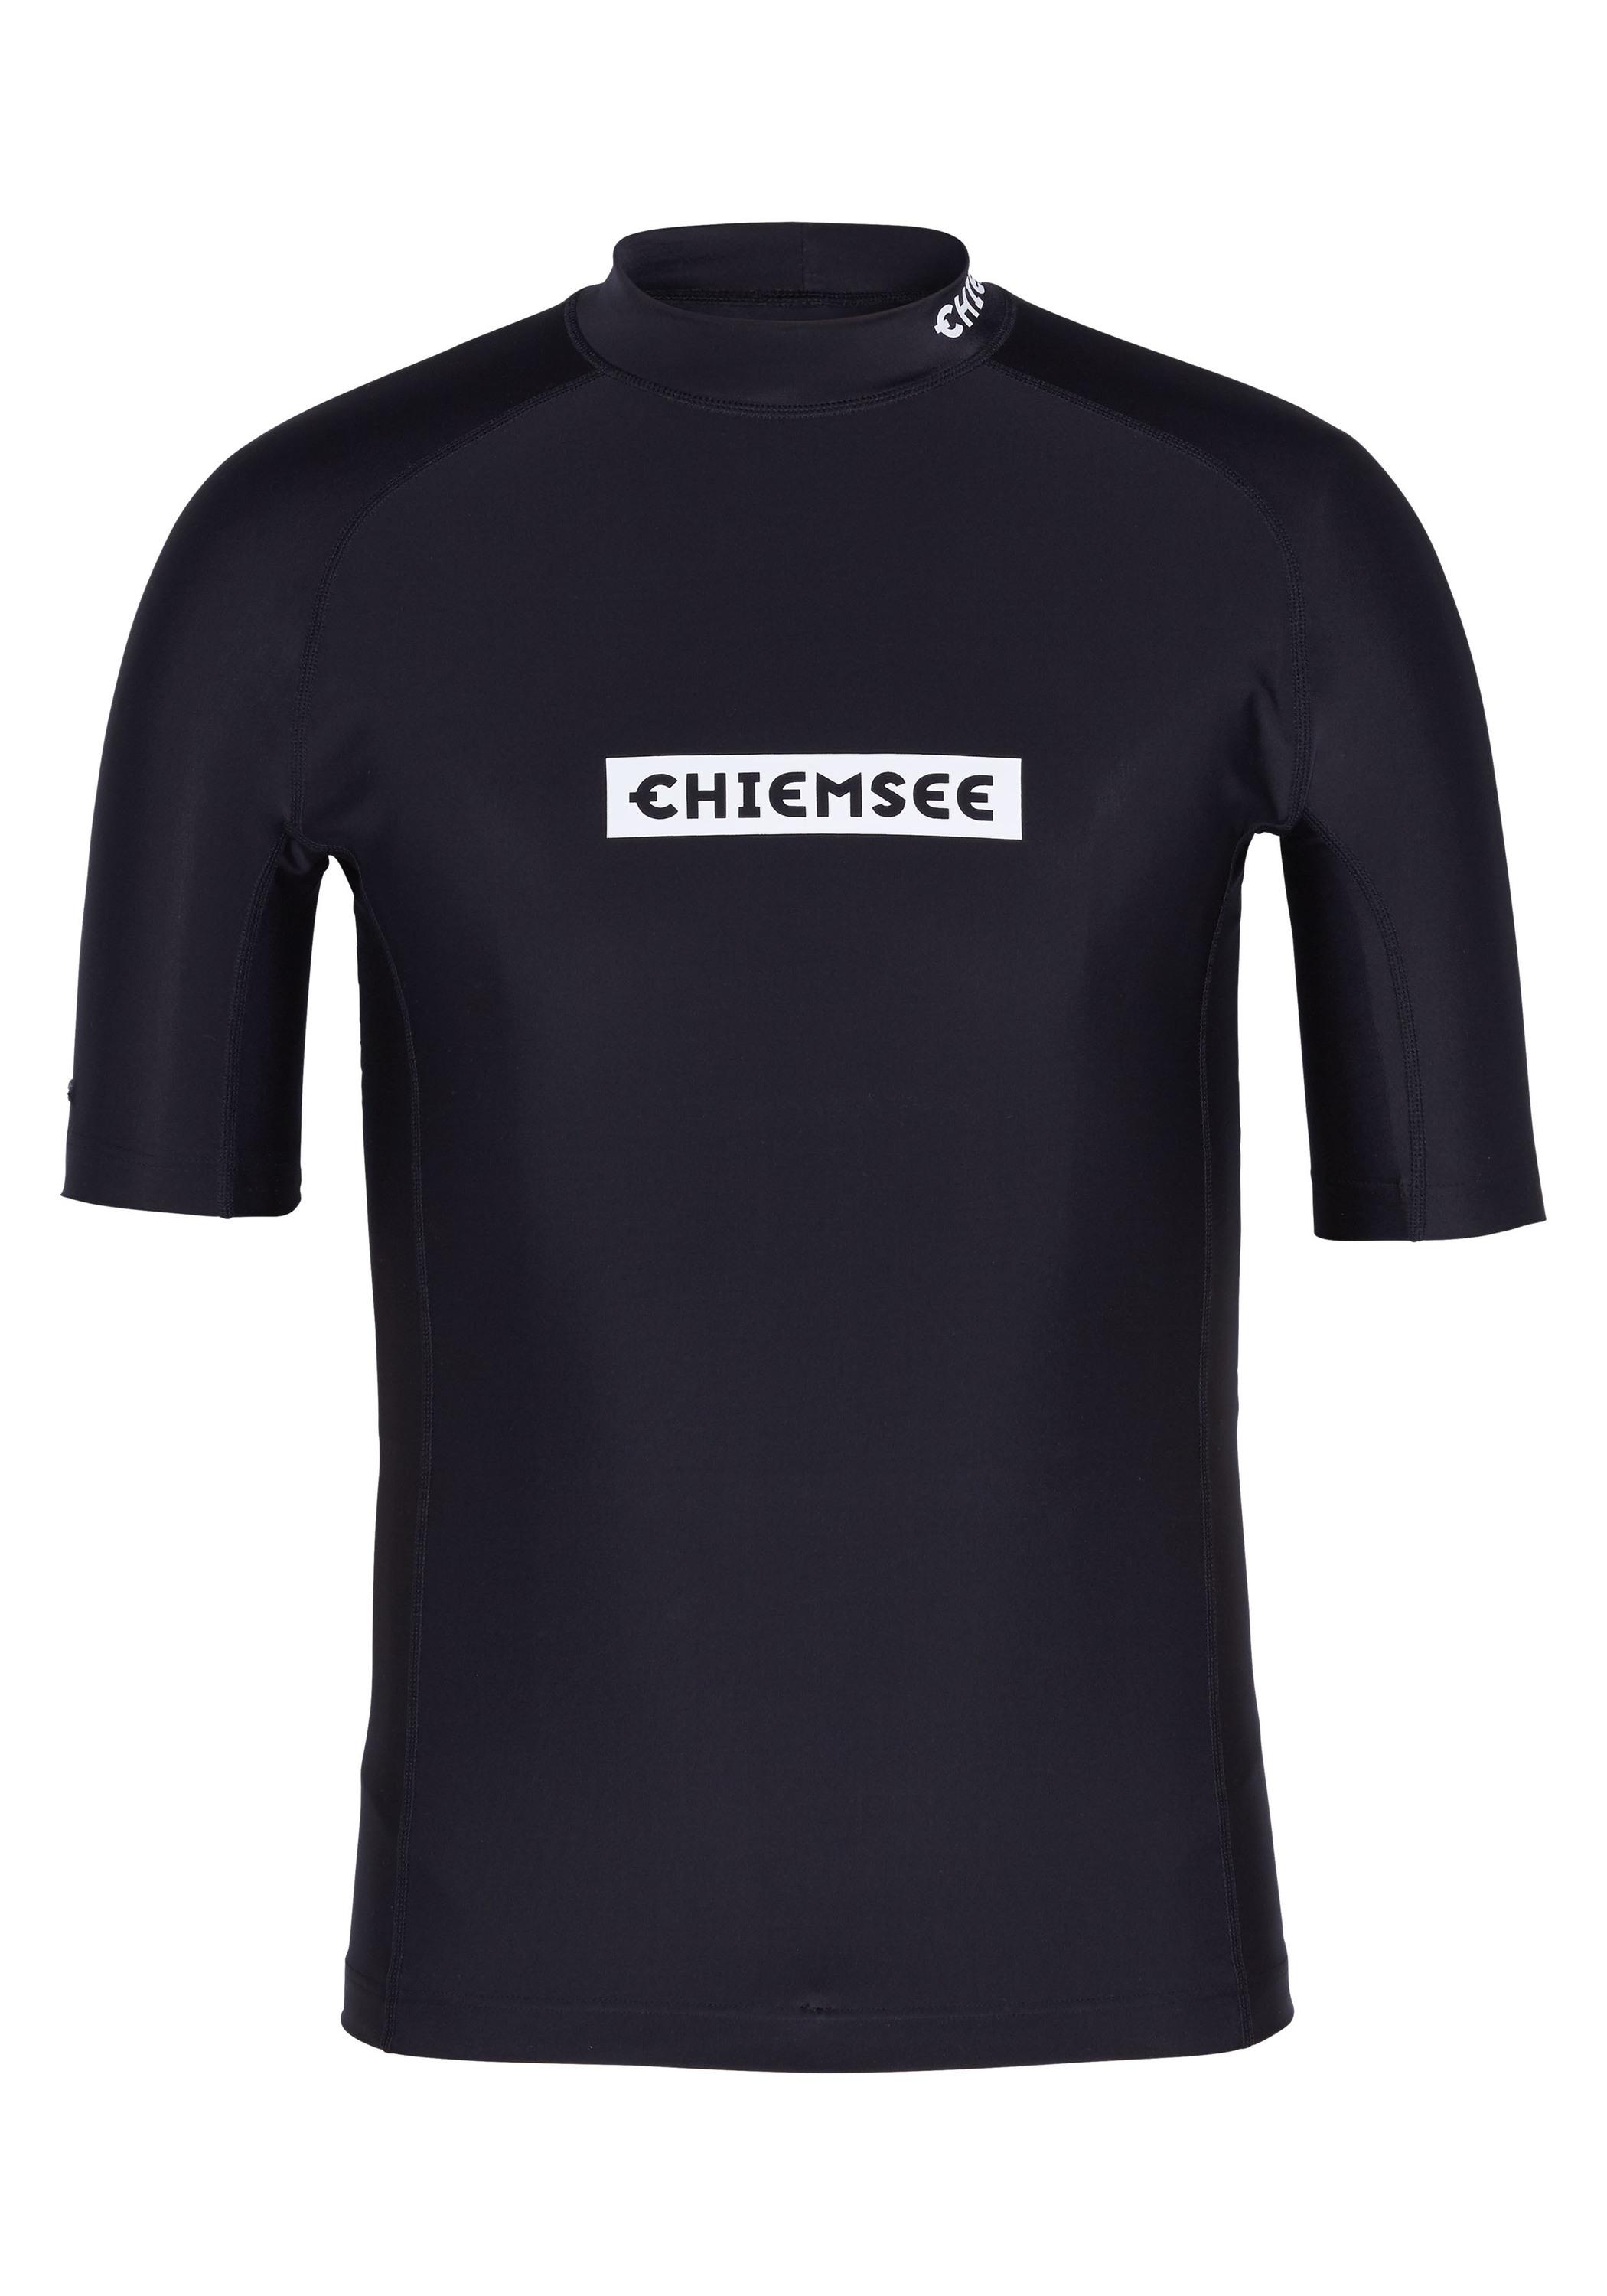 von Shop Surf Badeshirt new im Online Deep Black SportScheck Chiemsee Shirt kaufen